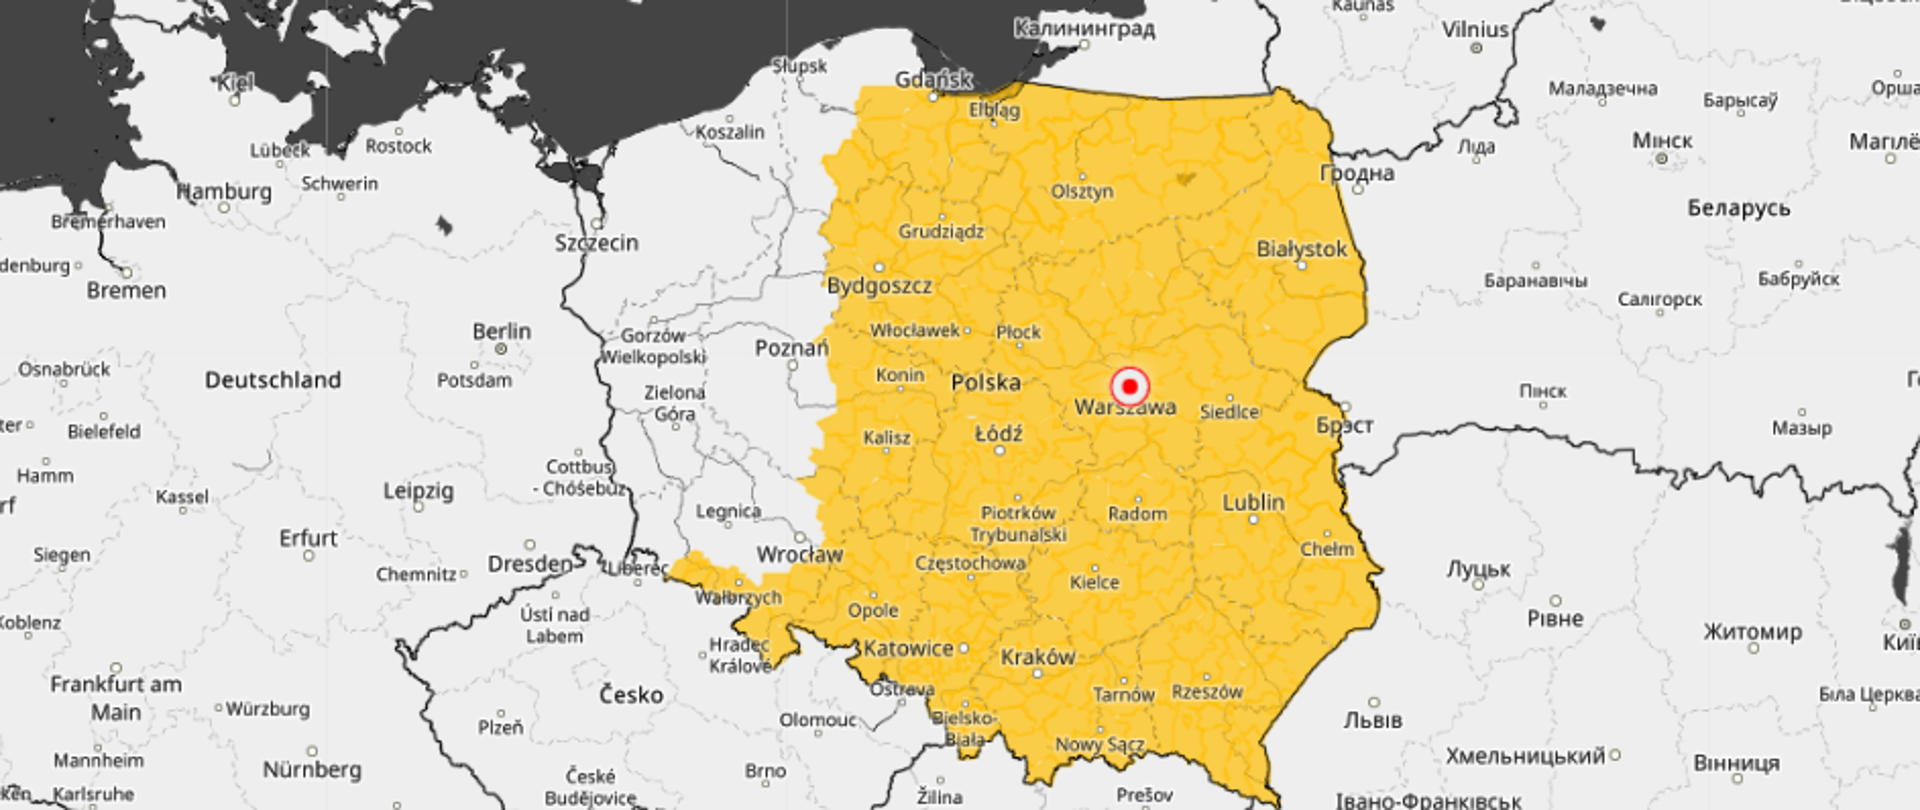 Na zdjęciu widać mapę polski. Kolorem żółtym zaznaczop obszary z ostrzeżeniami IMGW Silny Mróz.